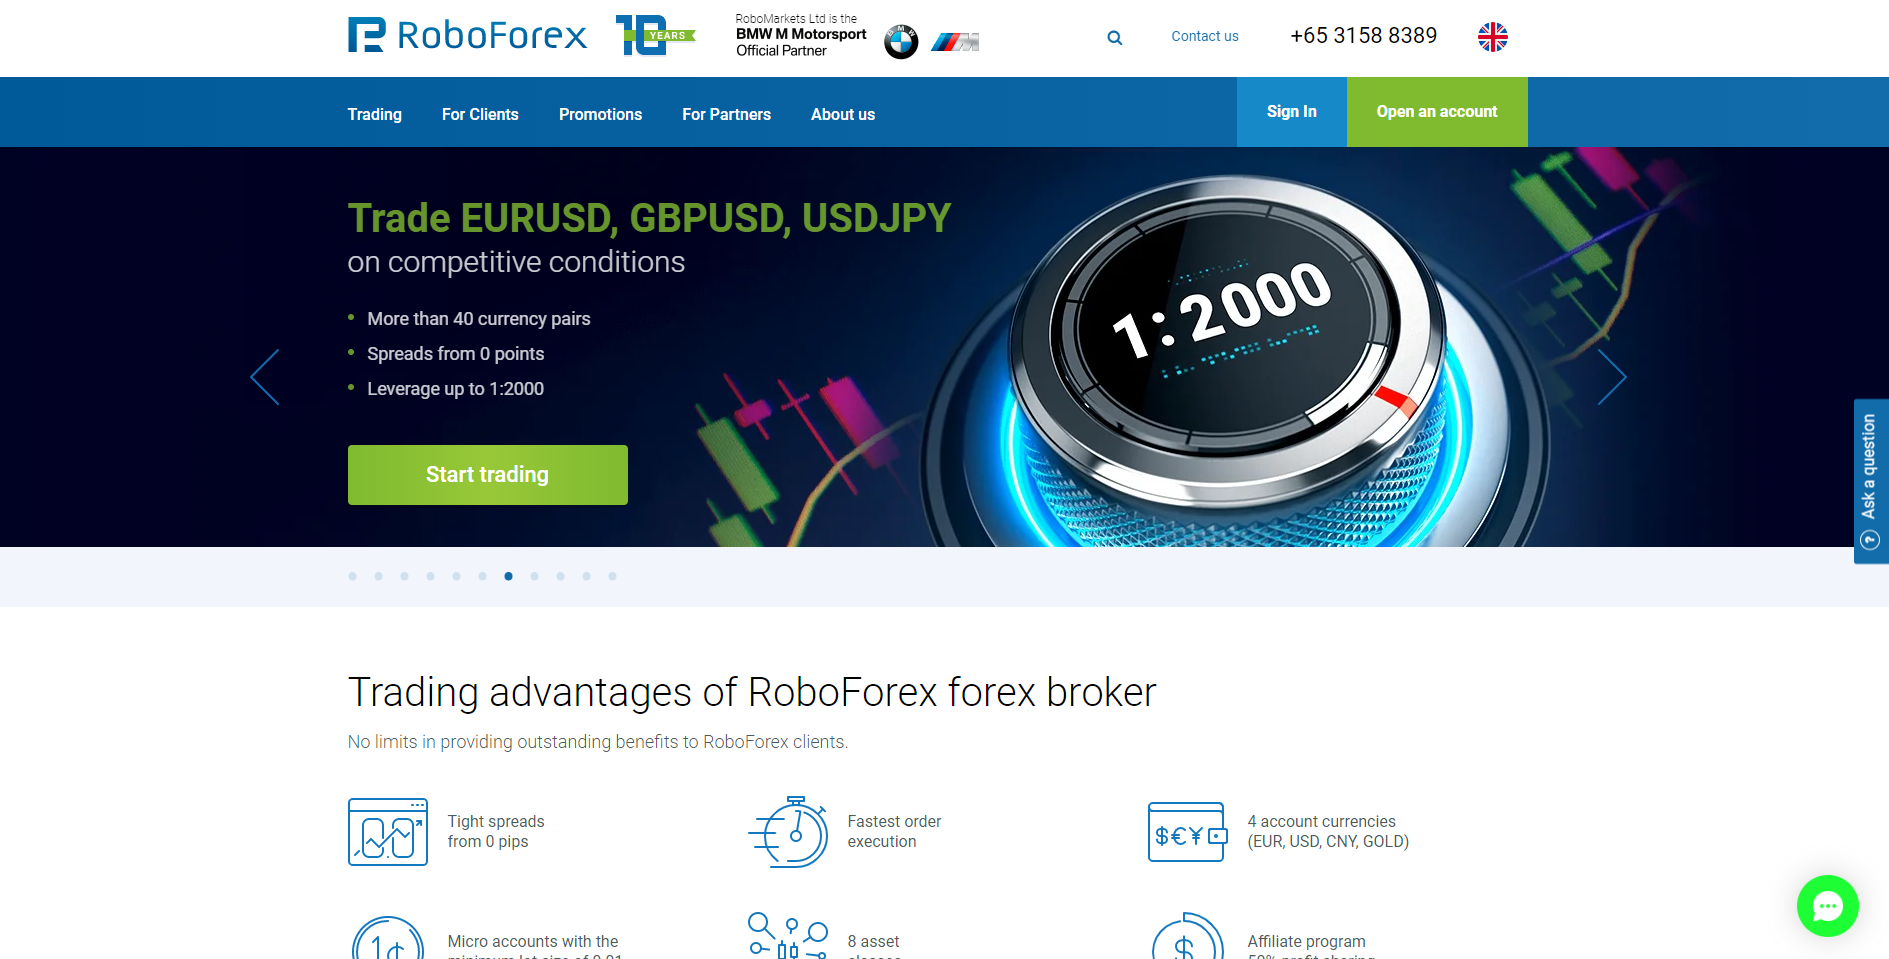 Forex brokeri RoboForex'nin resmi web sitesi